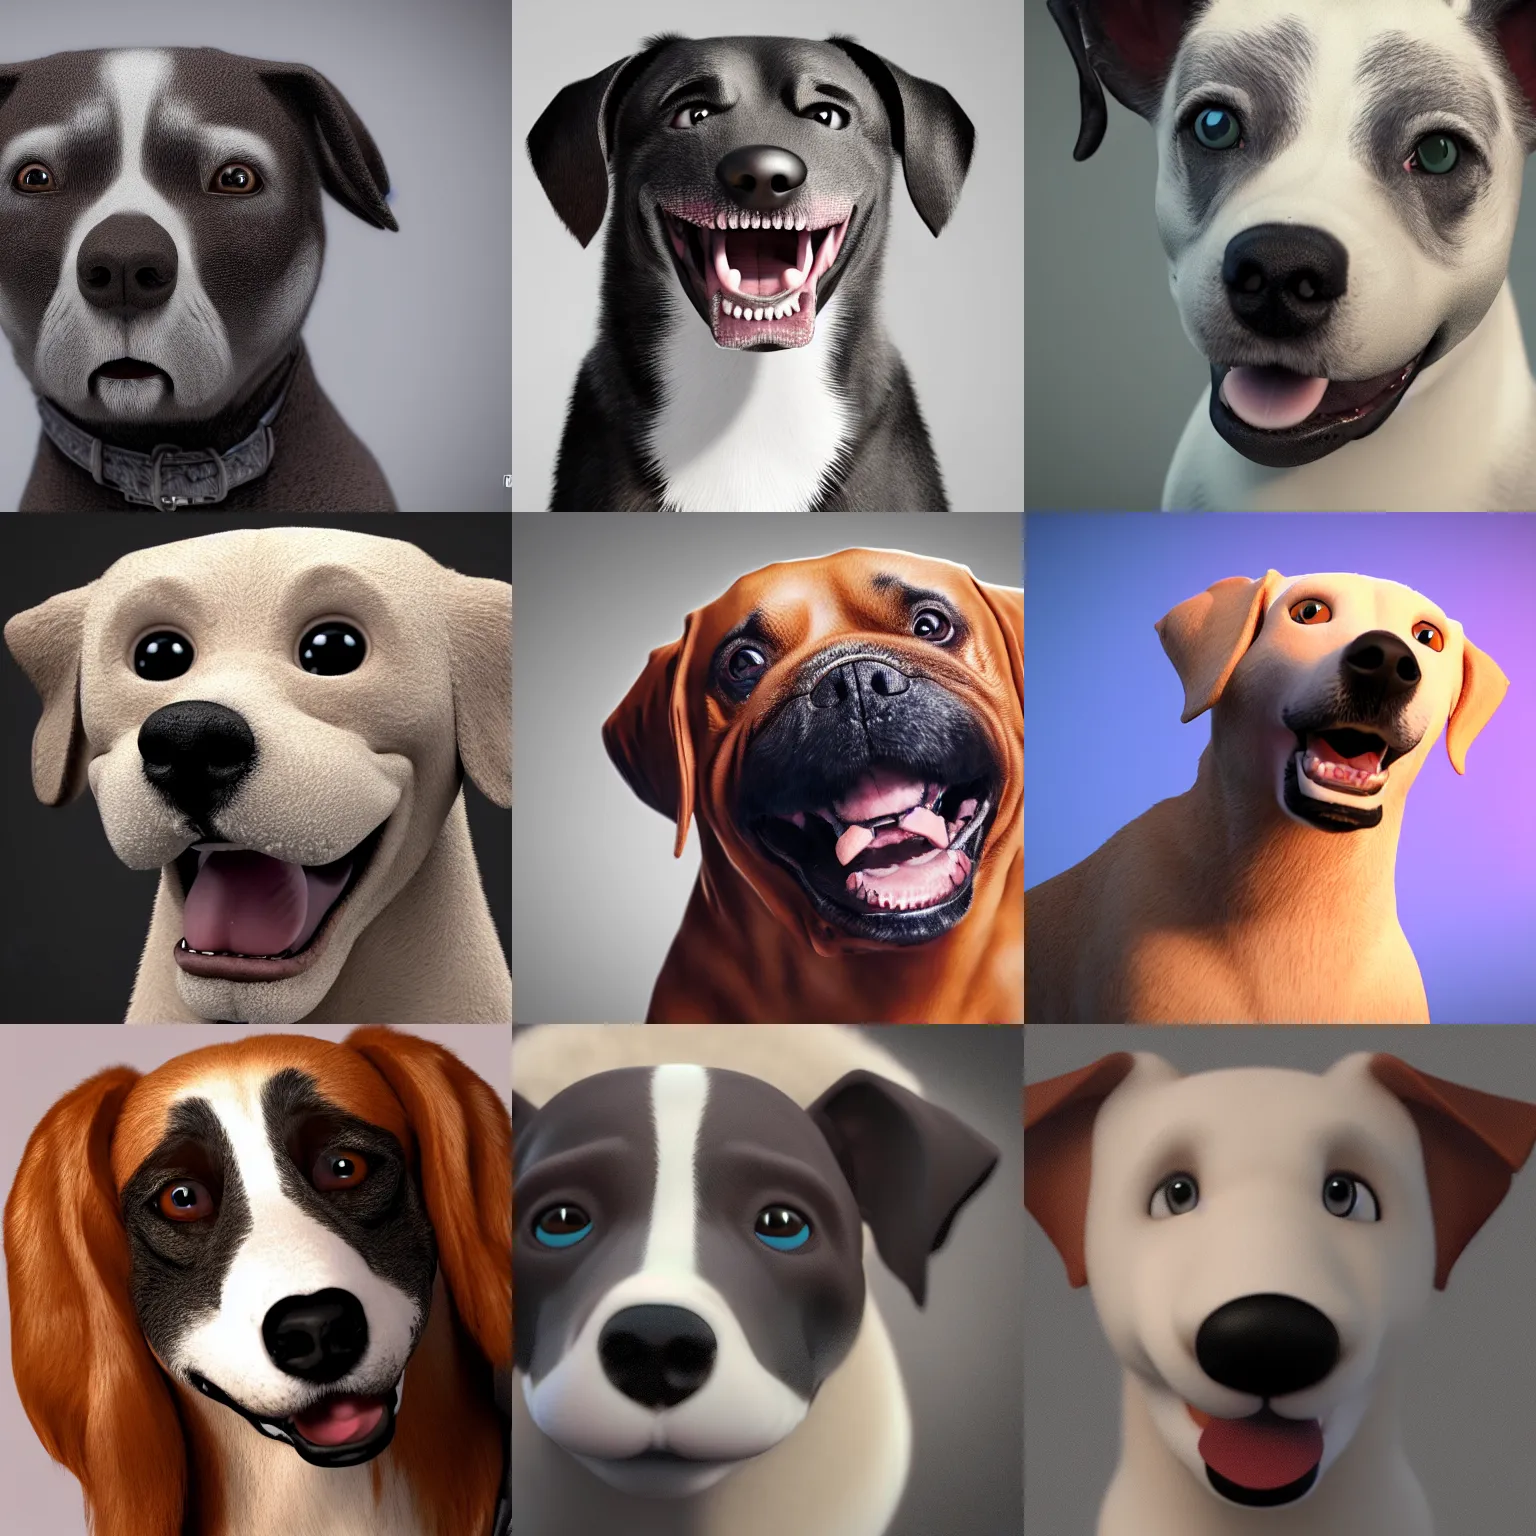 Prompt: a derpy dog smiling for a portrait. octane render, highly detailed, 4k